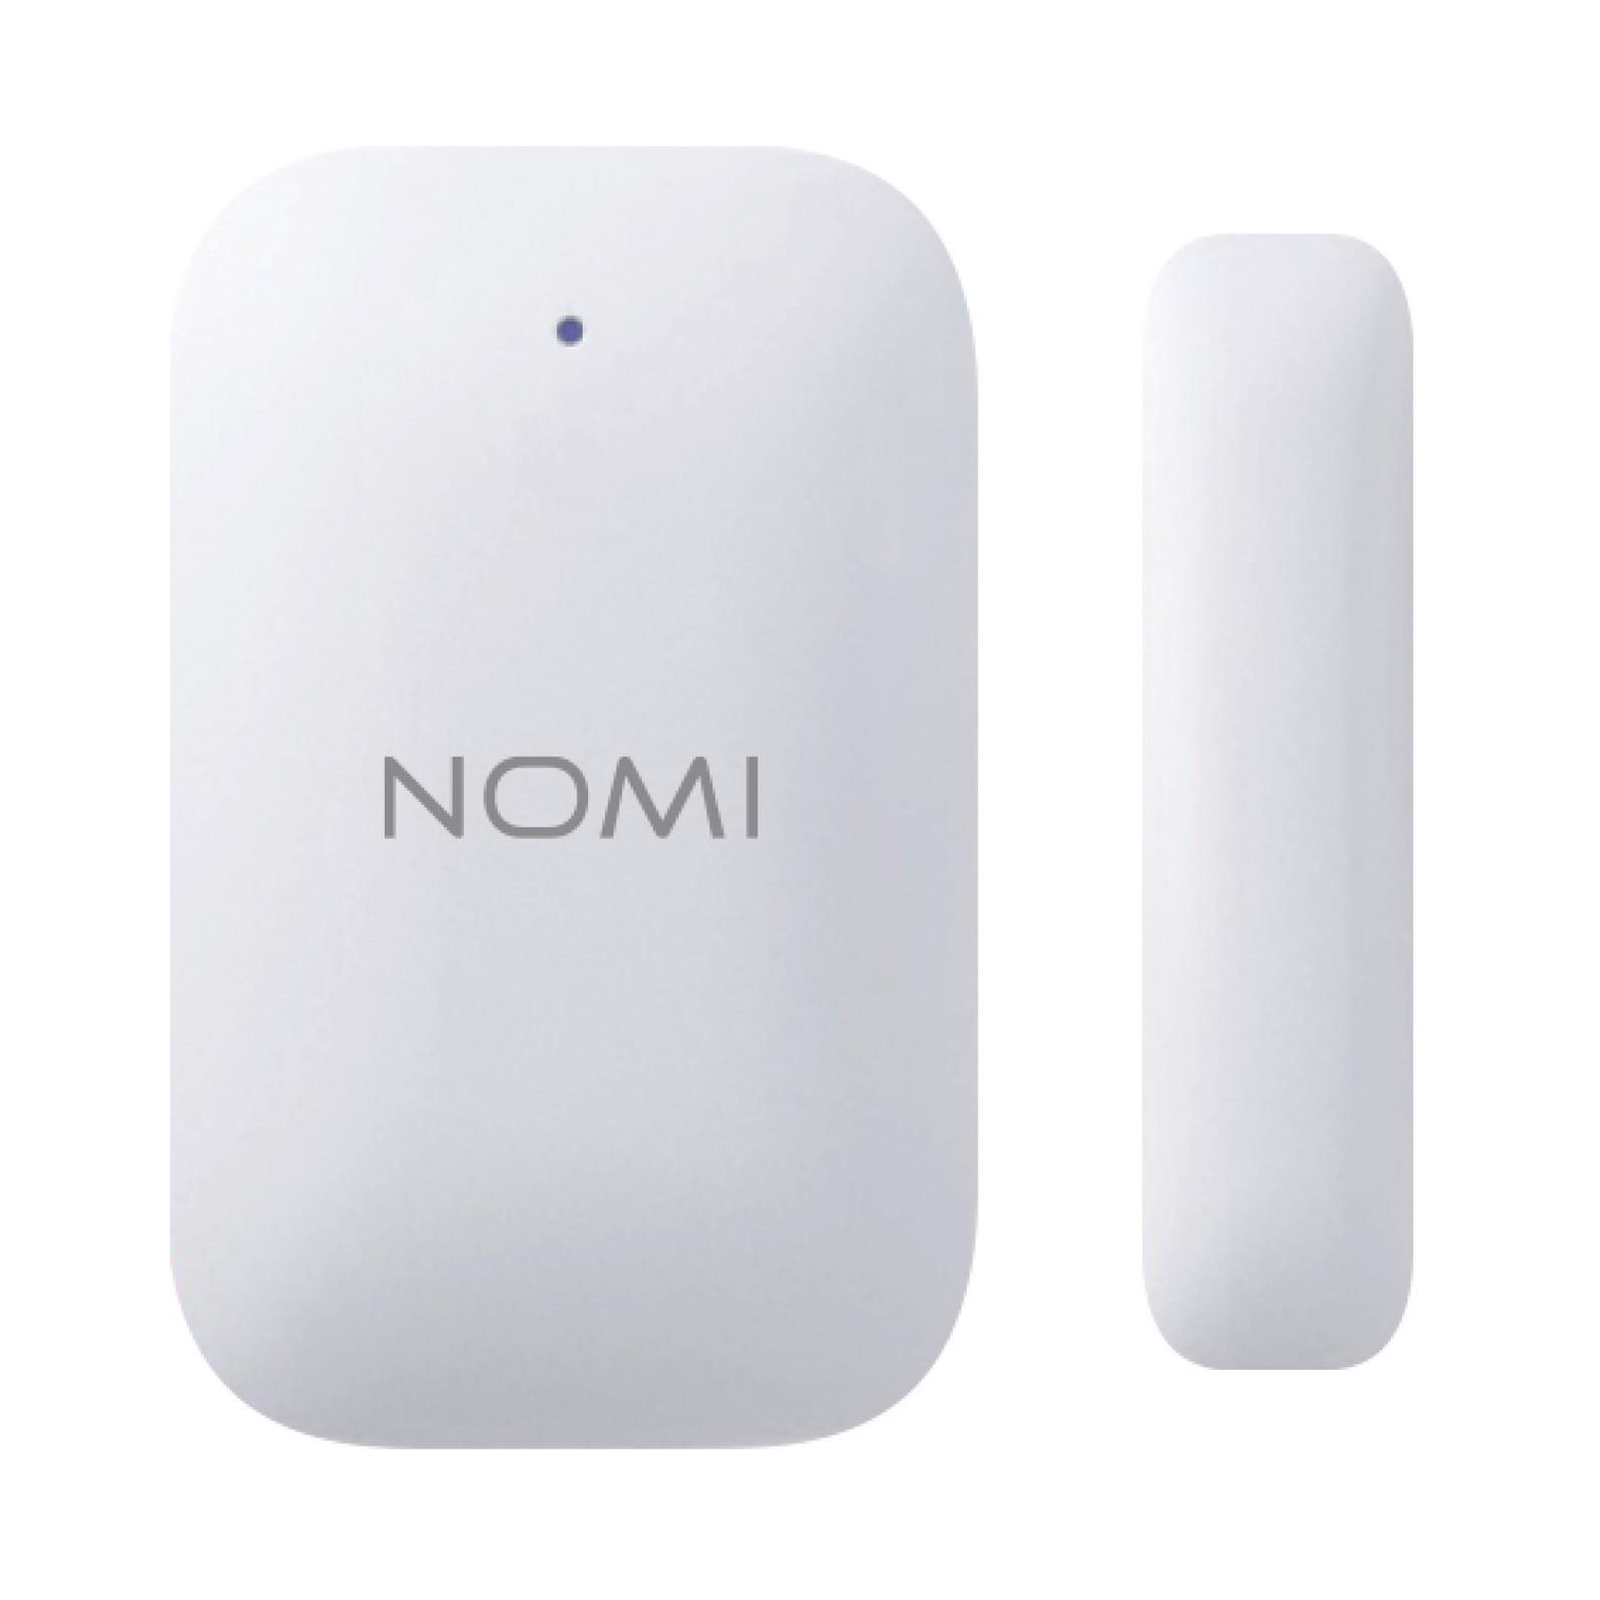 Комплект охранной сигнализации Nomi набор датчиков Smart Home (329732) изображение 3